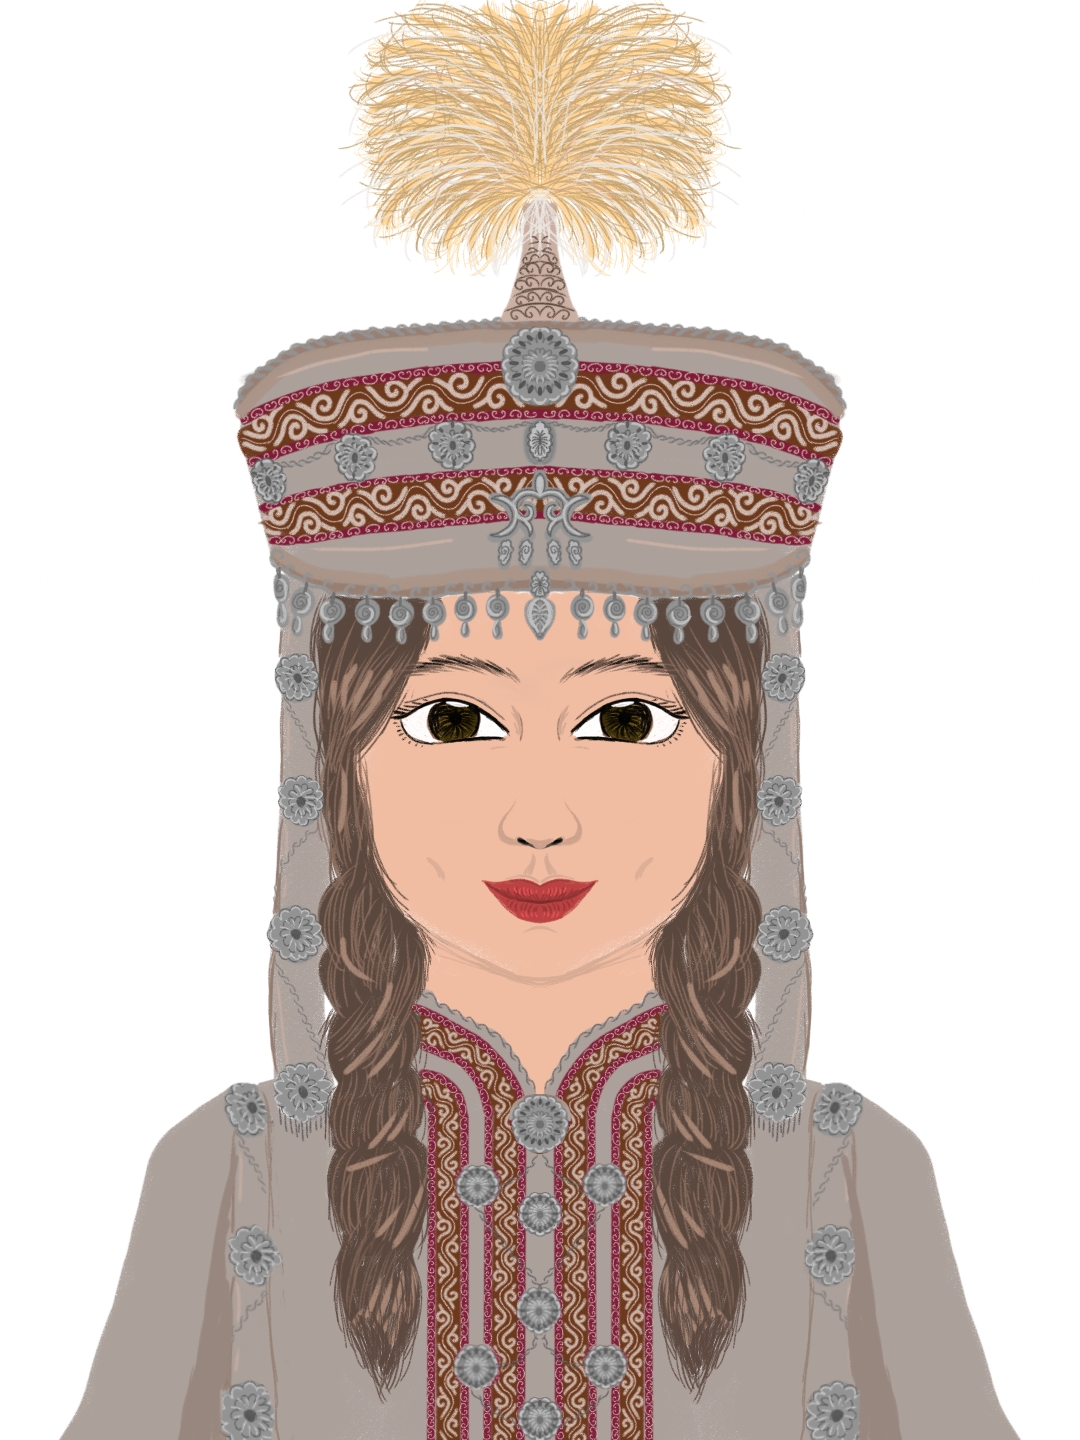 哈萨克人女孩 编辑类库存照片. 图片 包括有 卡扎克斯坦, 哈萨克人, 礼服, 年轻, 方式, 国家, 服装 - 67765878